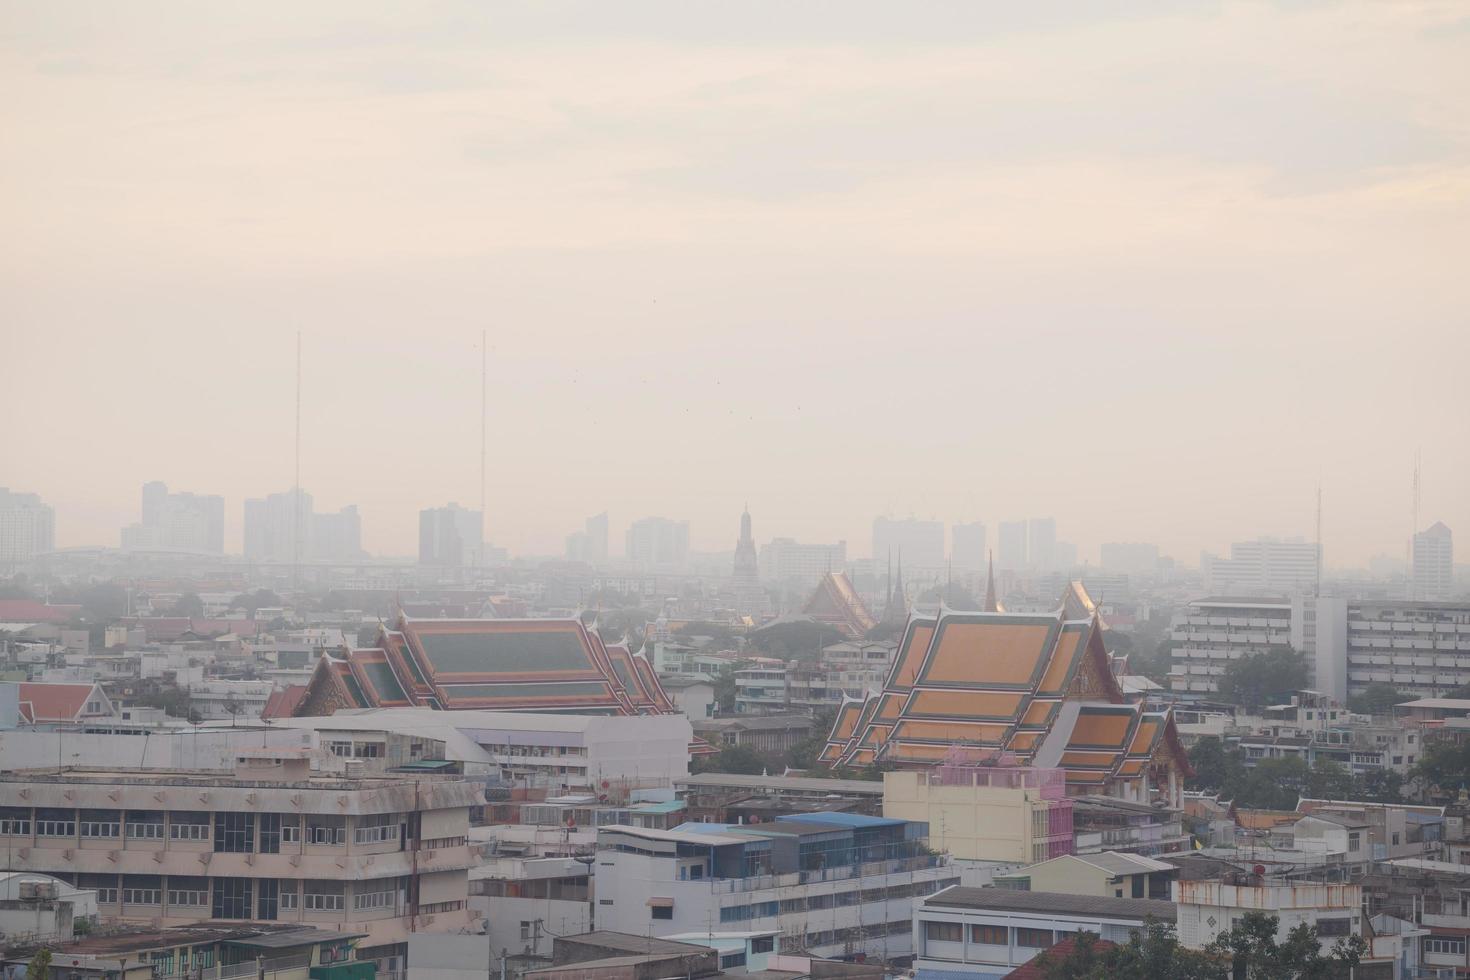 Bangkok, Thailand - Luftverschmutzung in der Stadt Bangkok foto